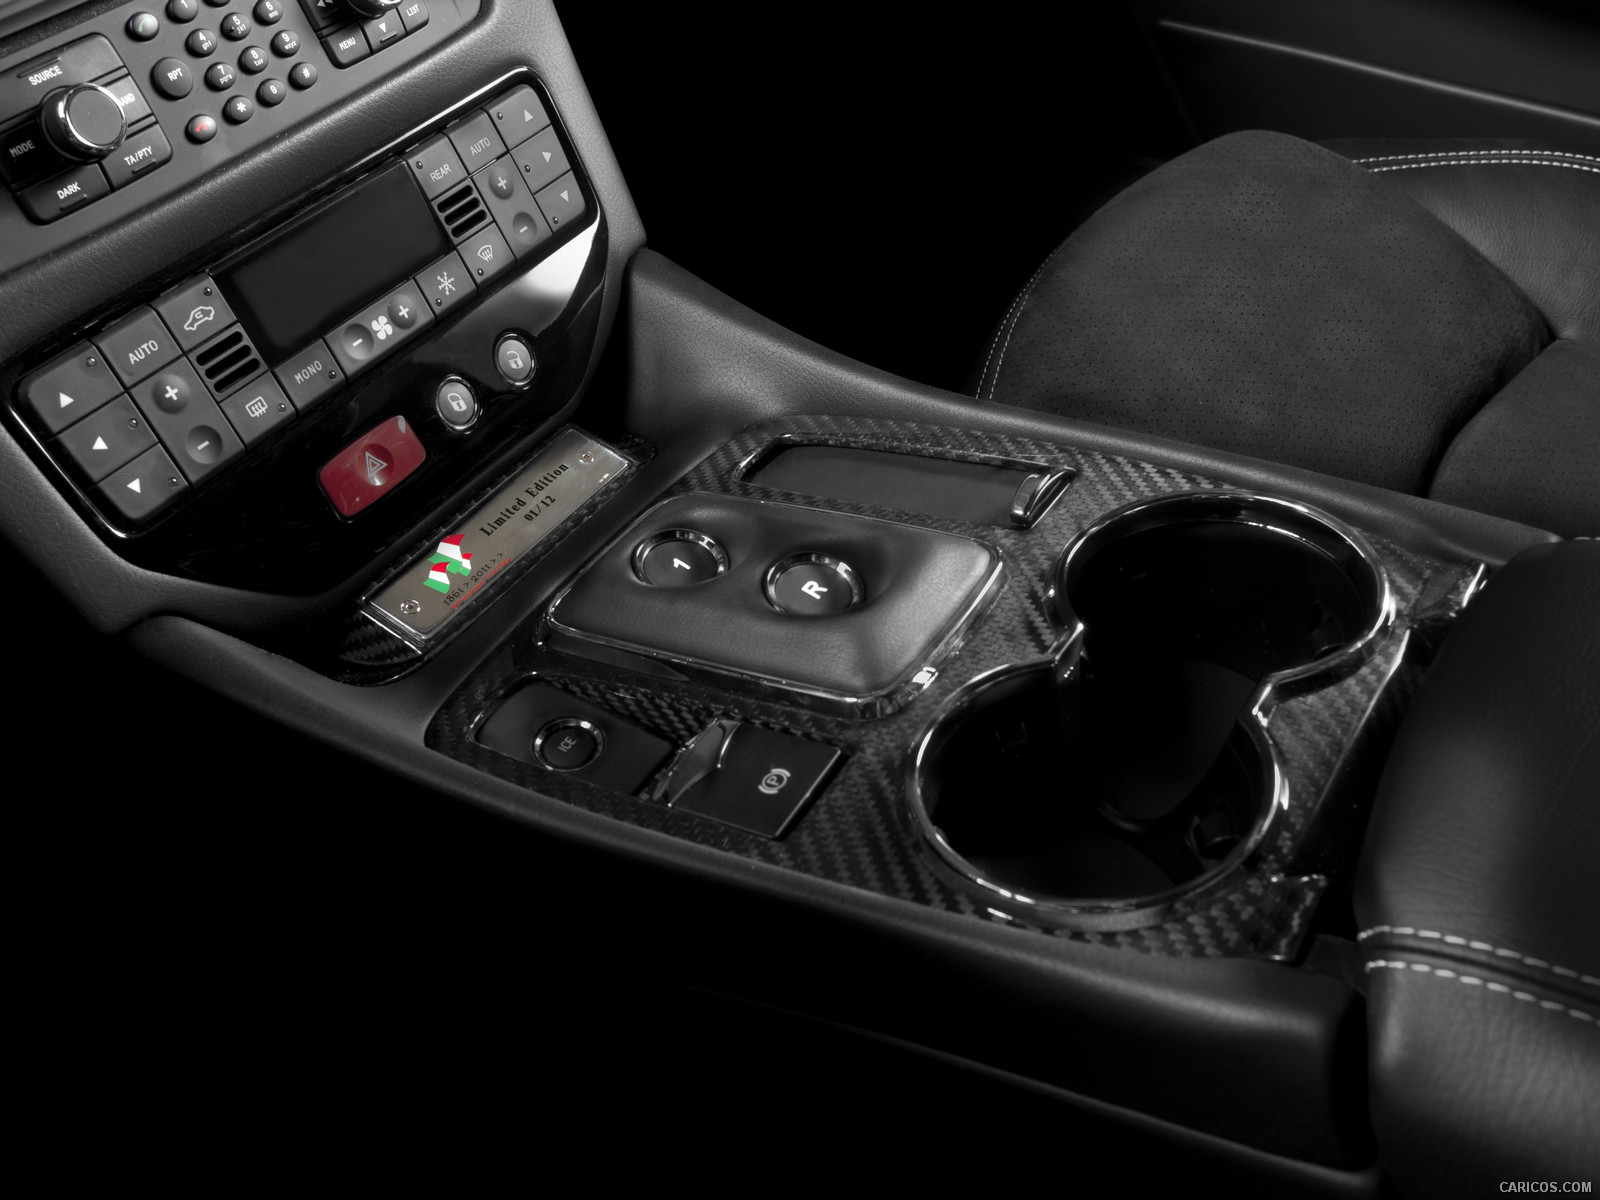 2012 Maserati GranTurismo S Limited Edition  - Interior, #3 of 7